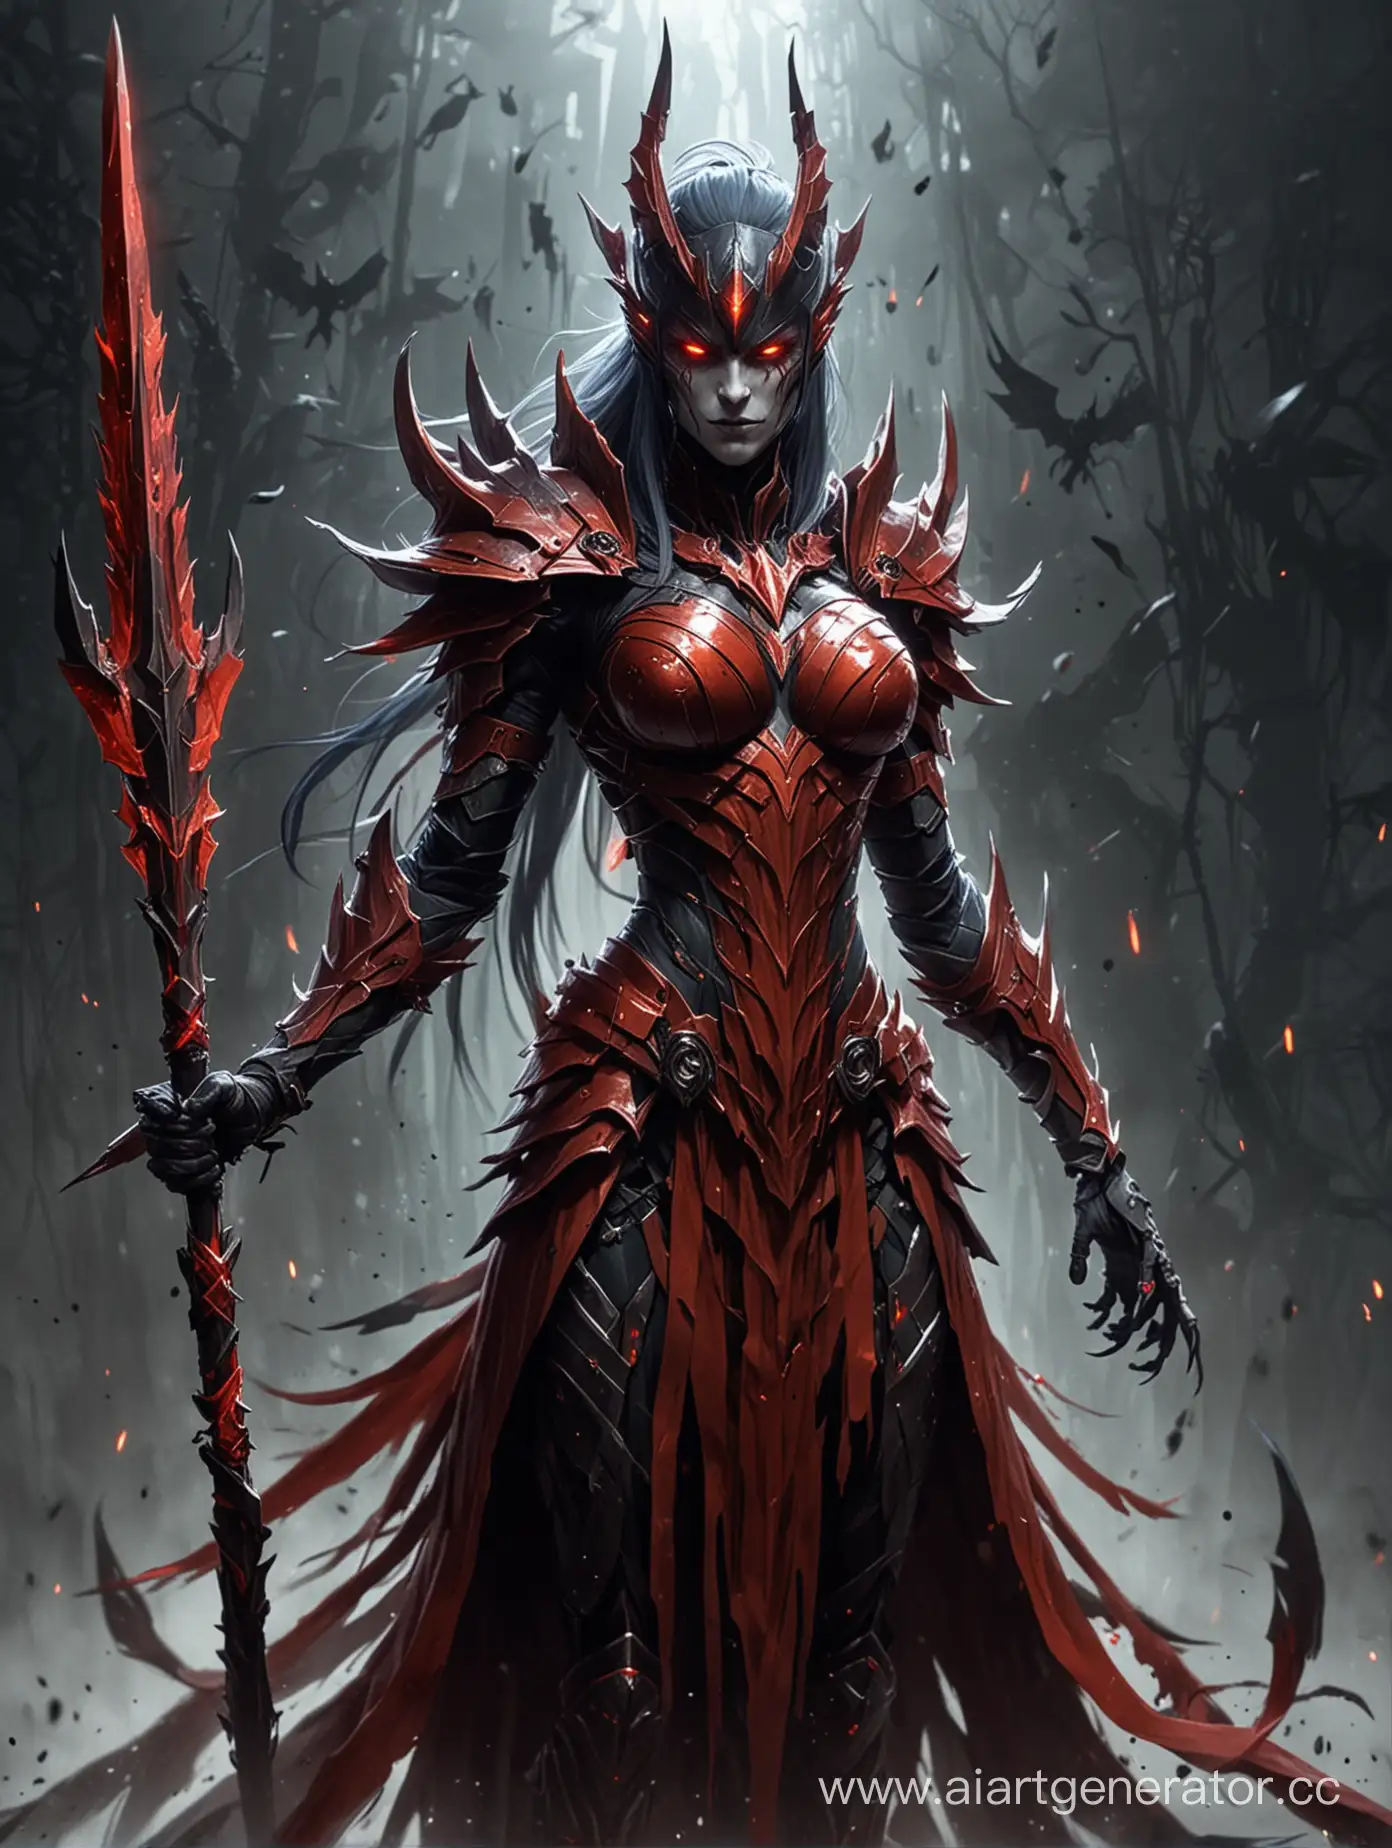 Malevolent-Spirit-in-Crimson-Armor-with-Battle-Spear